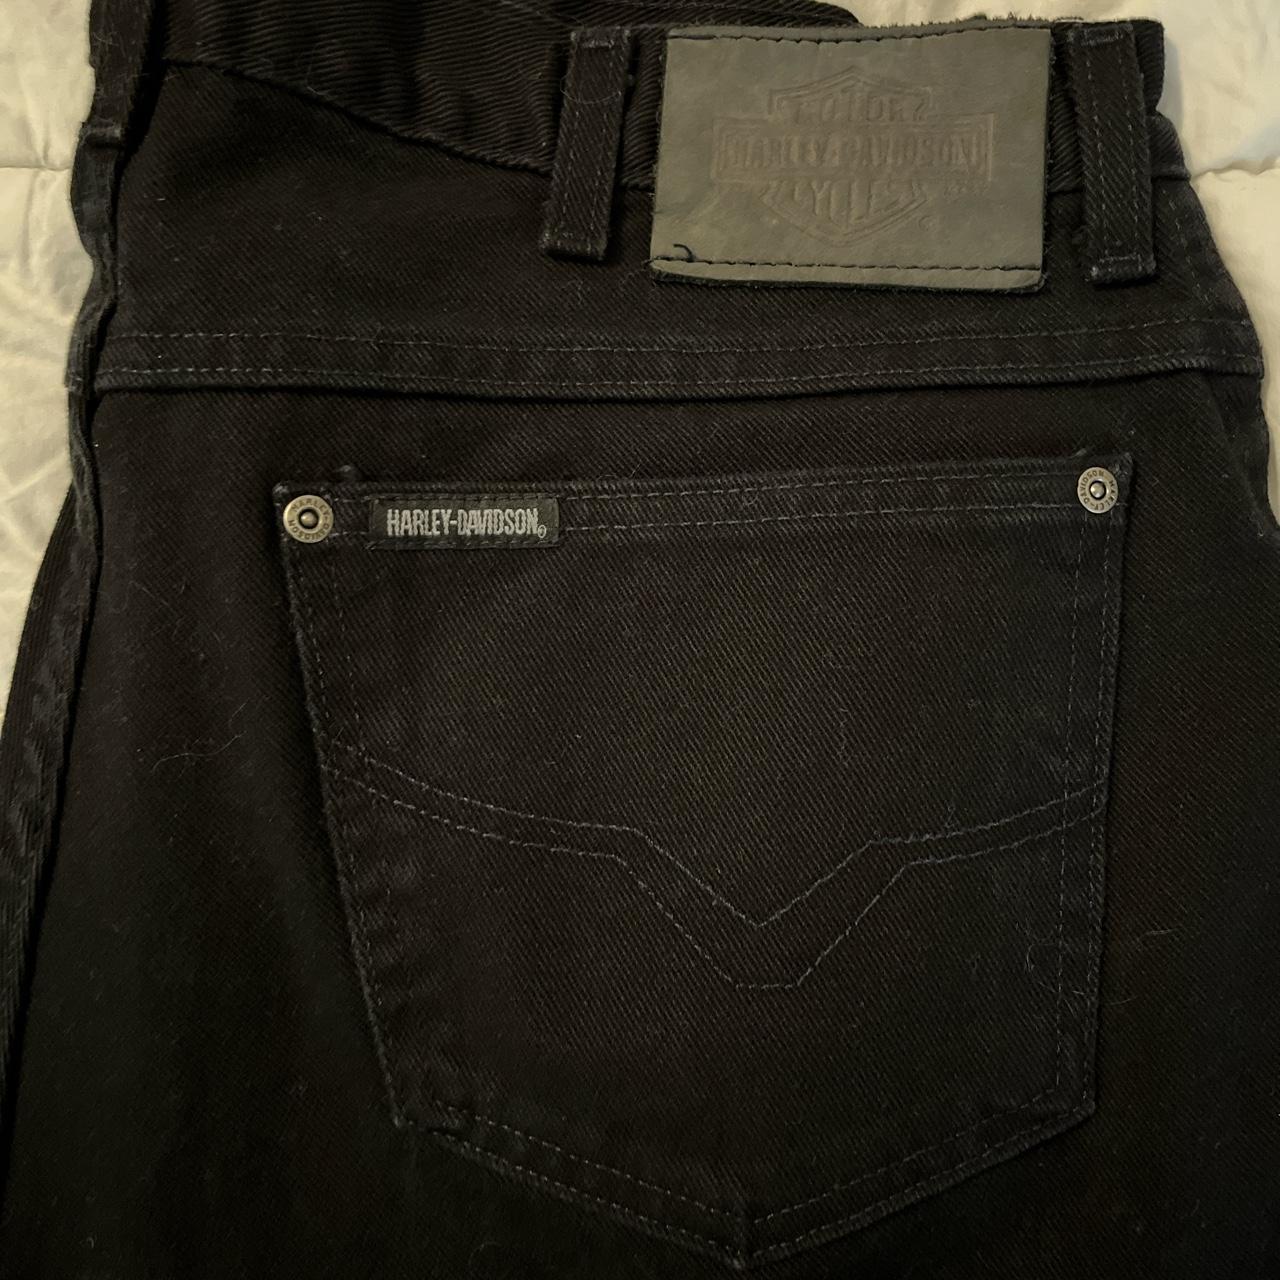 Harley Davidson Men's Black Jeans | Depop